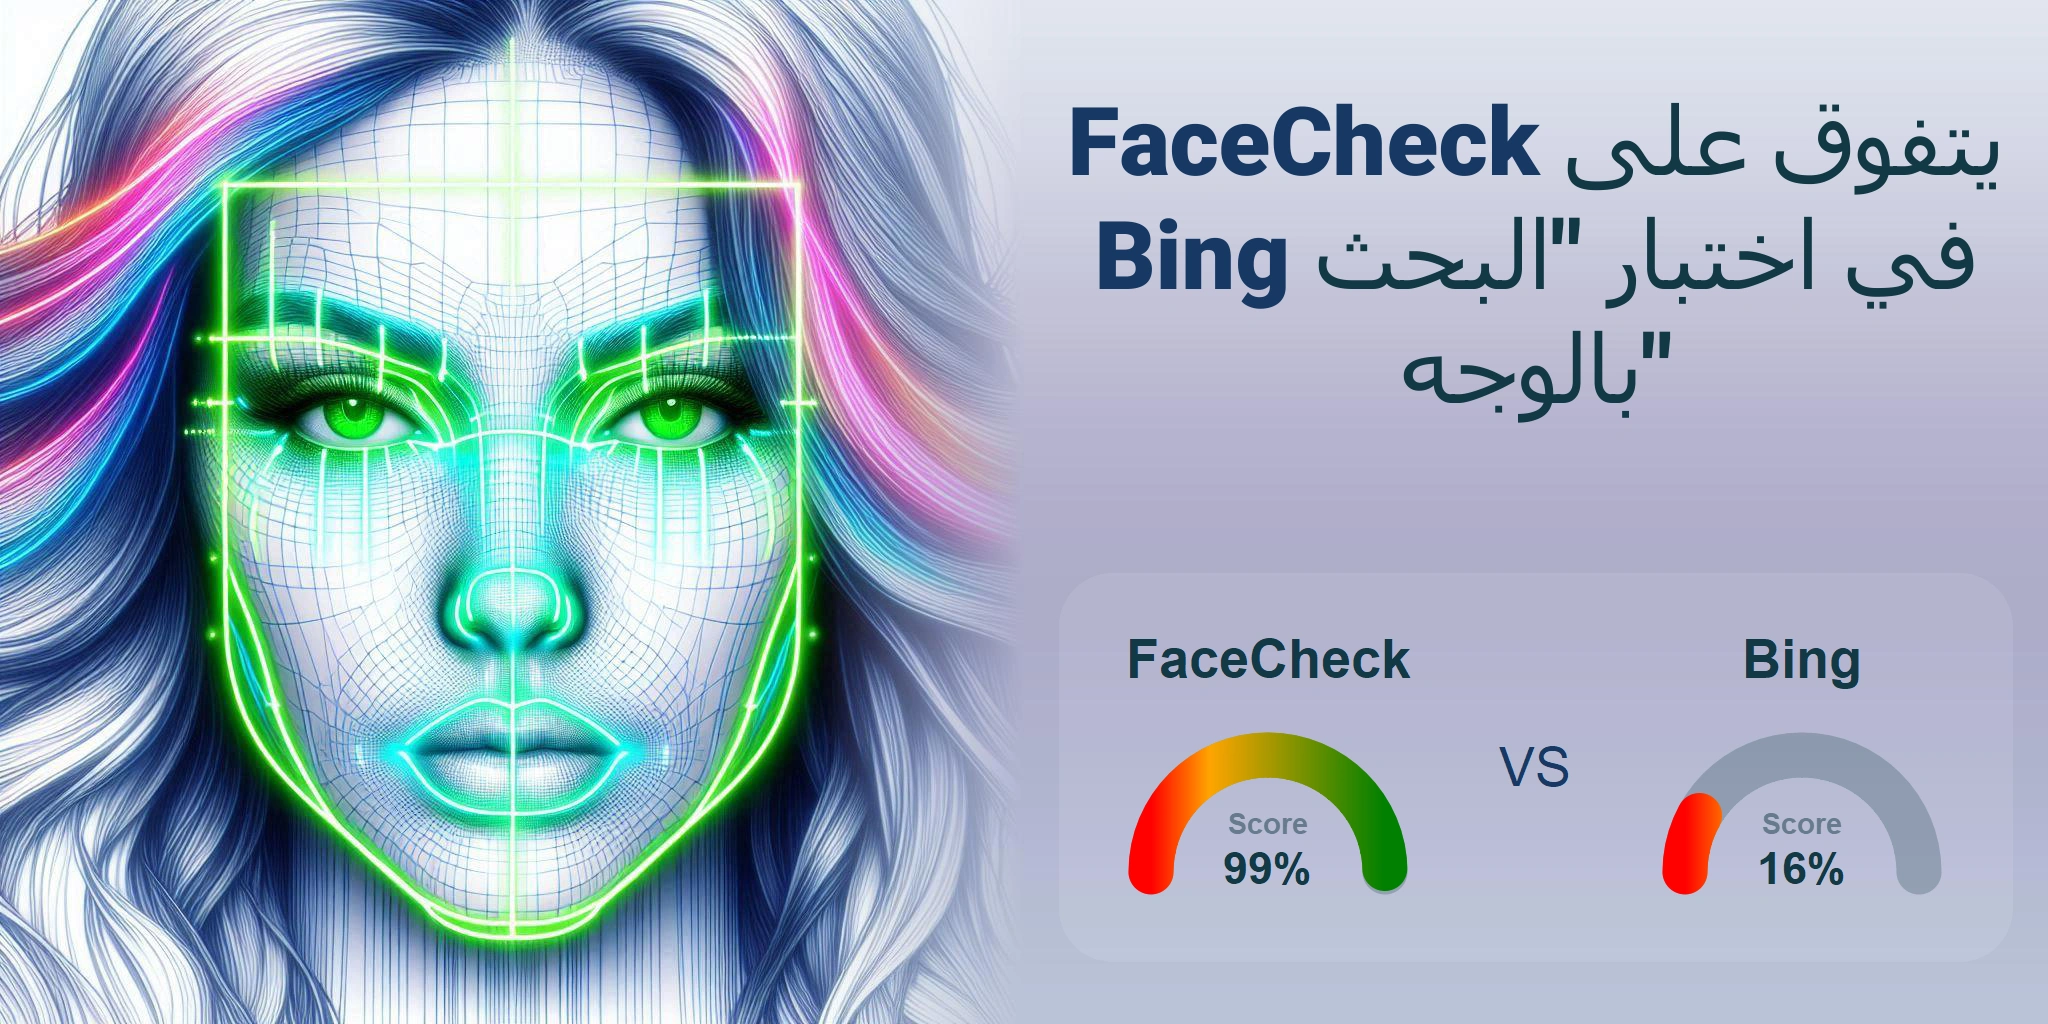 ما هو الأفضل للبحث بالوجه: <br>FaceCheck أو Bing؟